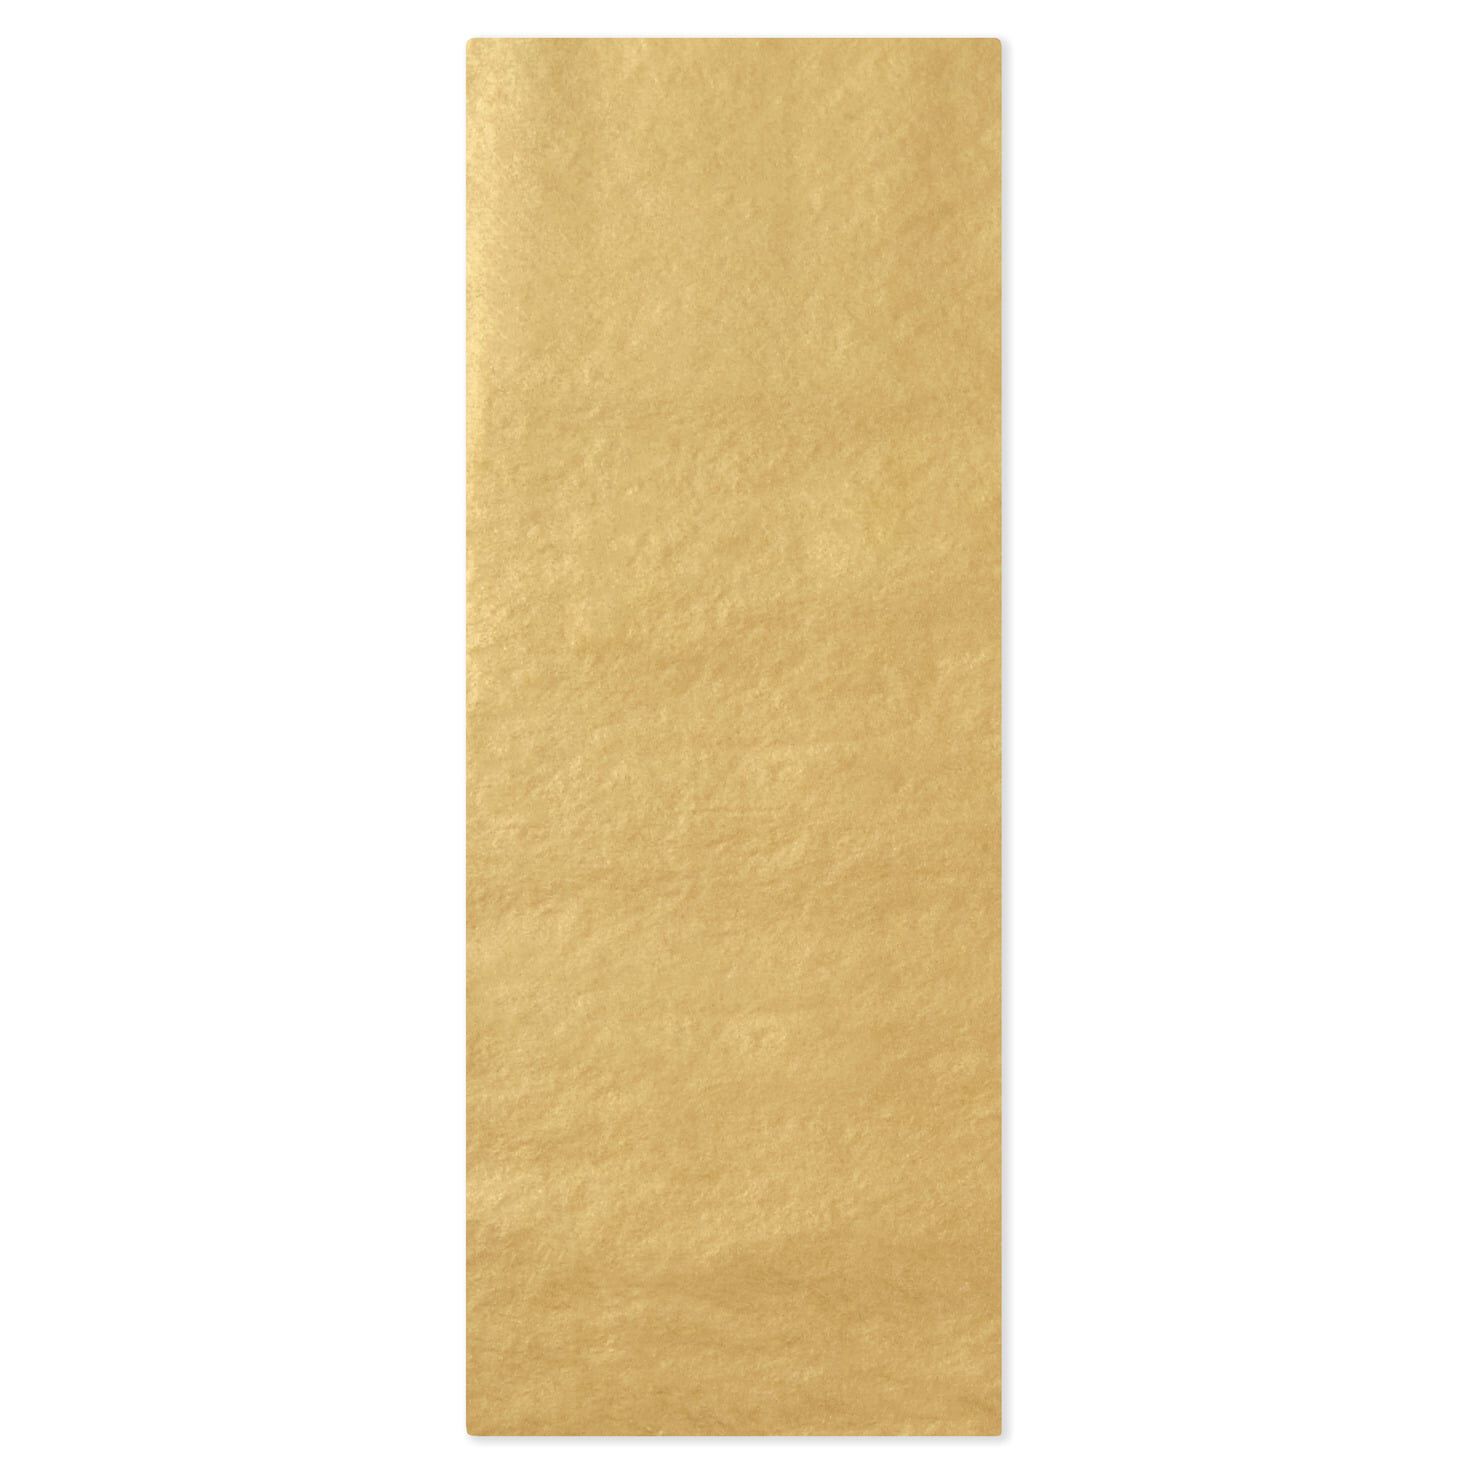 Harvest Gold, Color Tissue Paper